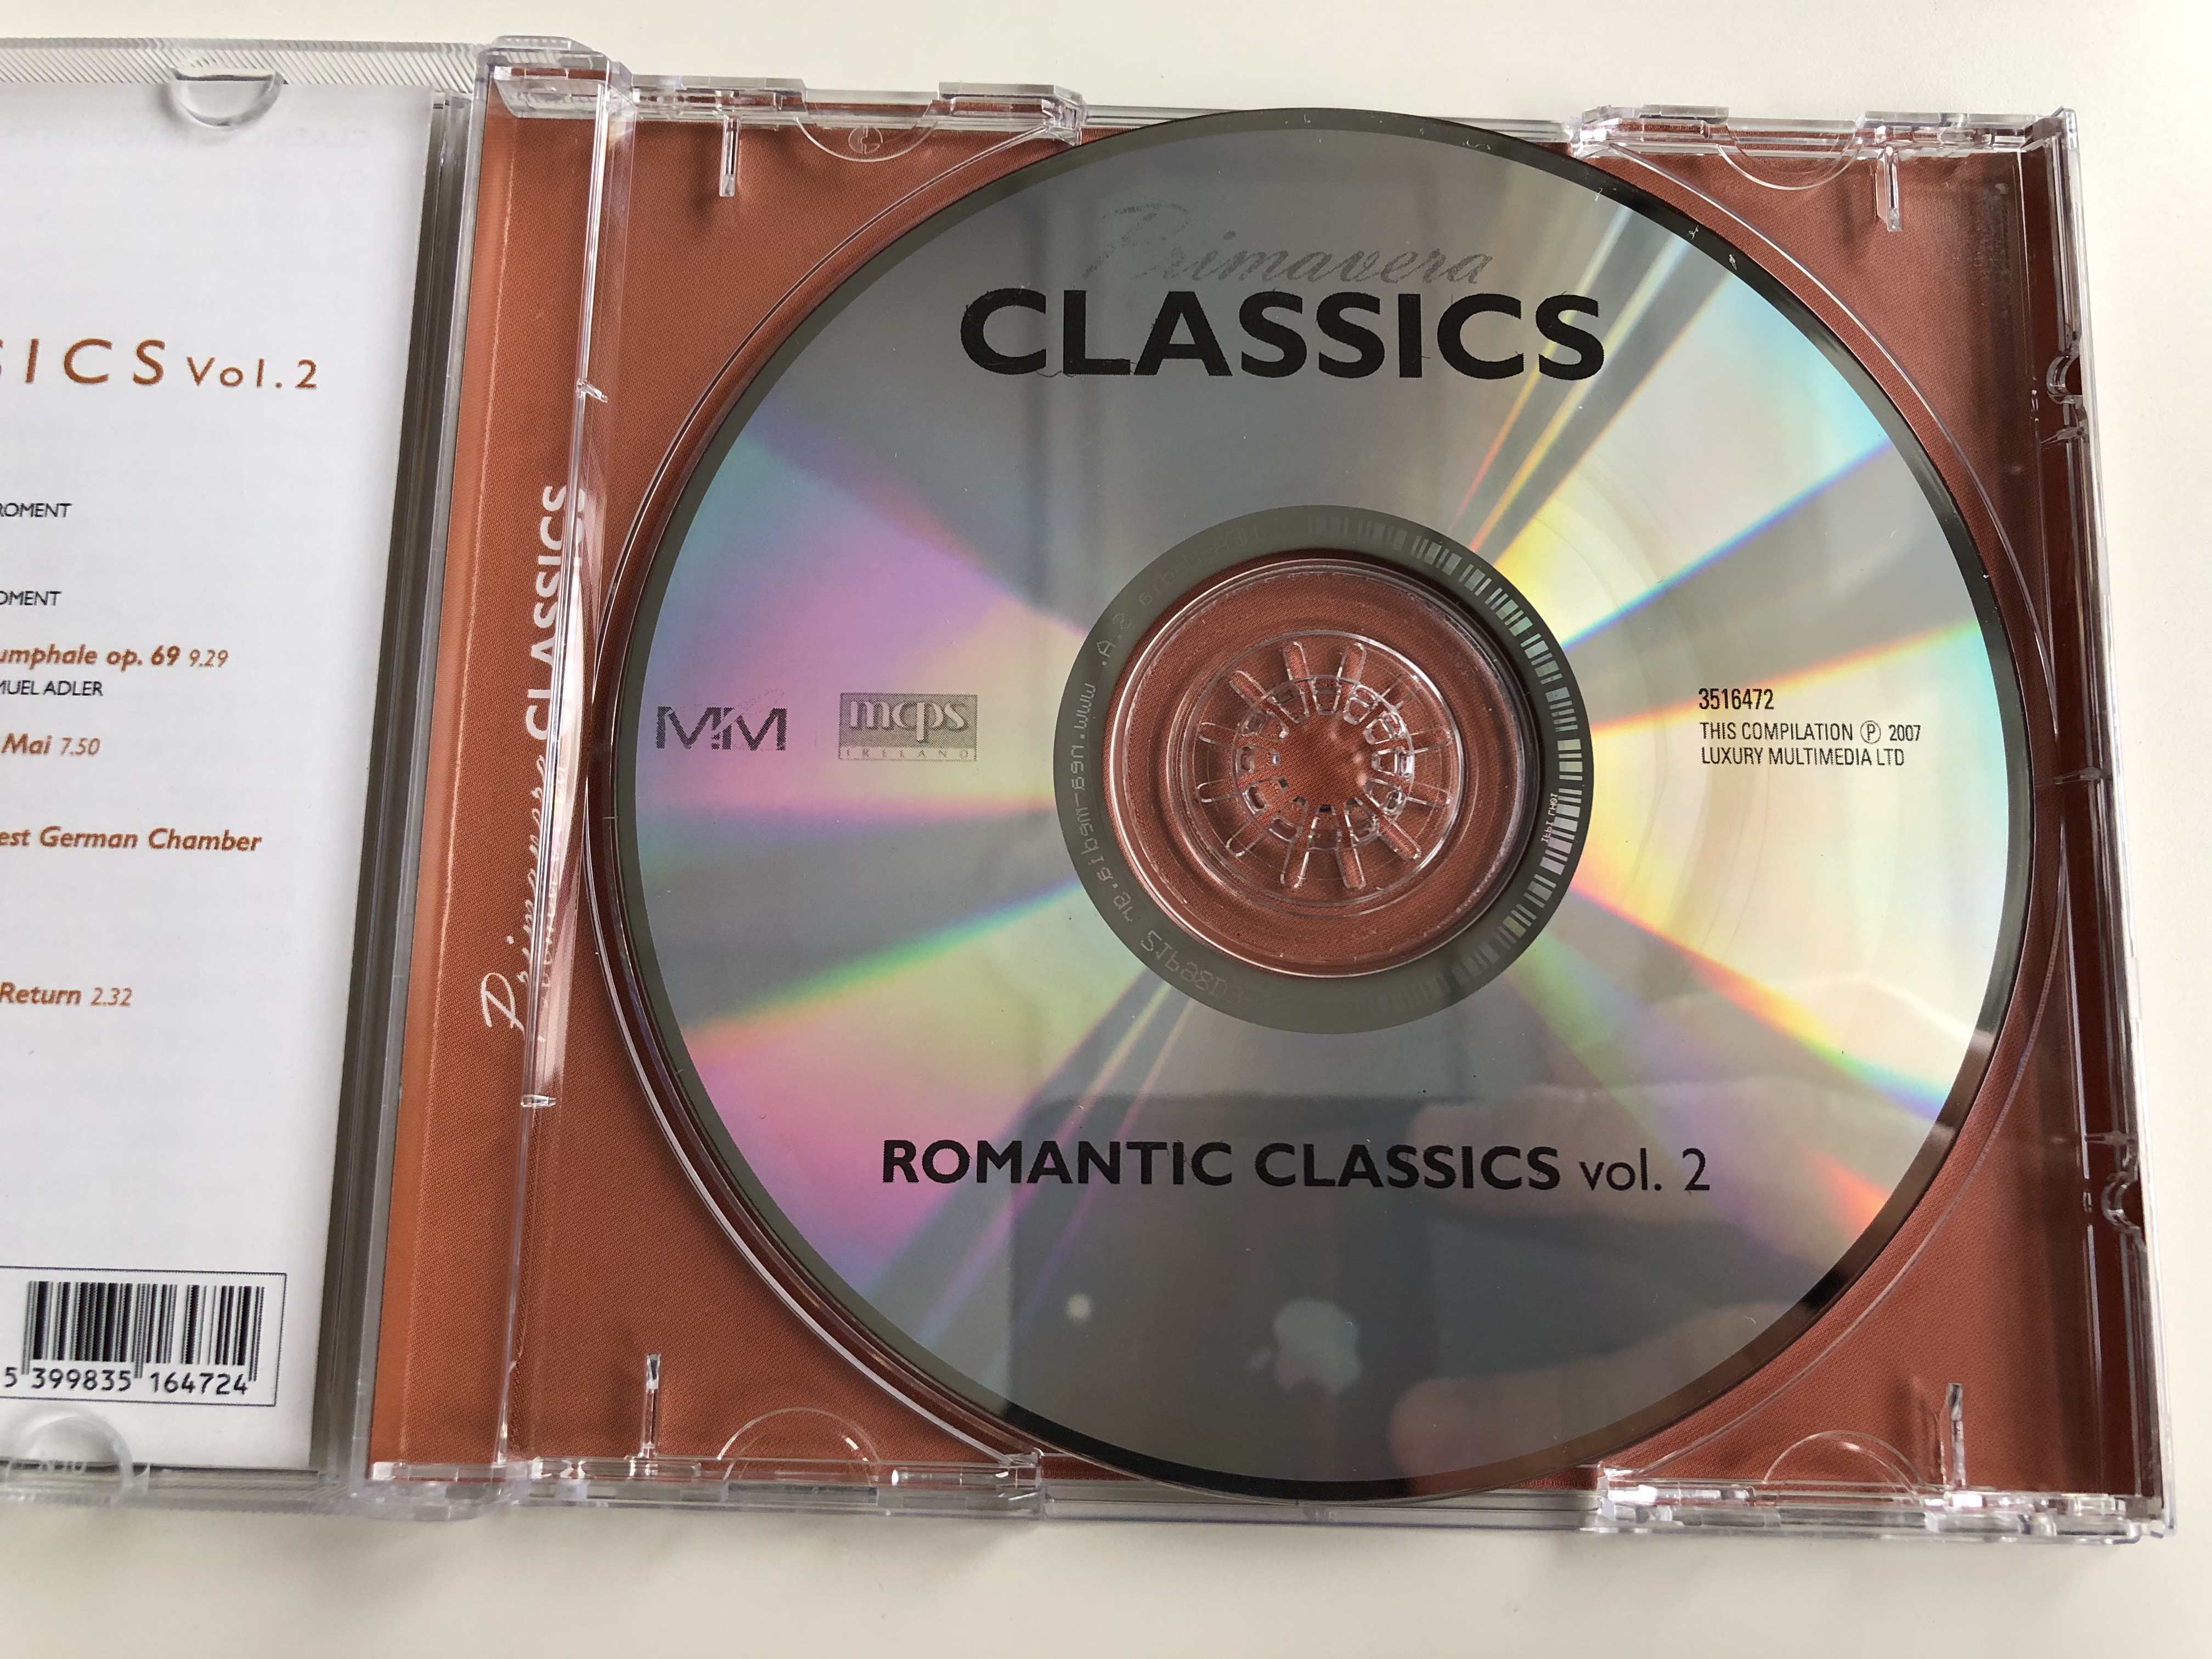 primavera-classics-romantic-classics-volume-two-faure-satie-grieg-vieuxtemps-rimsky-korssakov-symphony-orchestra-radio-luxemburg-louis-de-froment-berlin-symphonic-orchestra-samuel-adle-3-.jpg